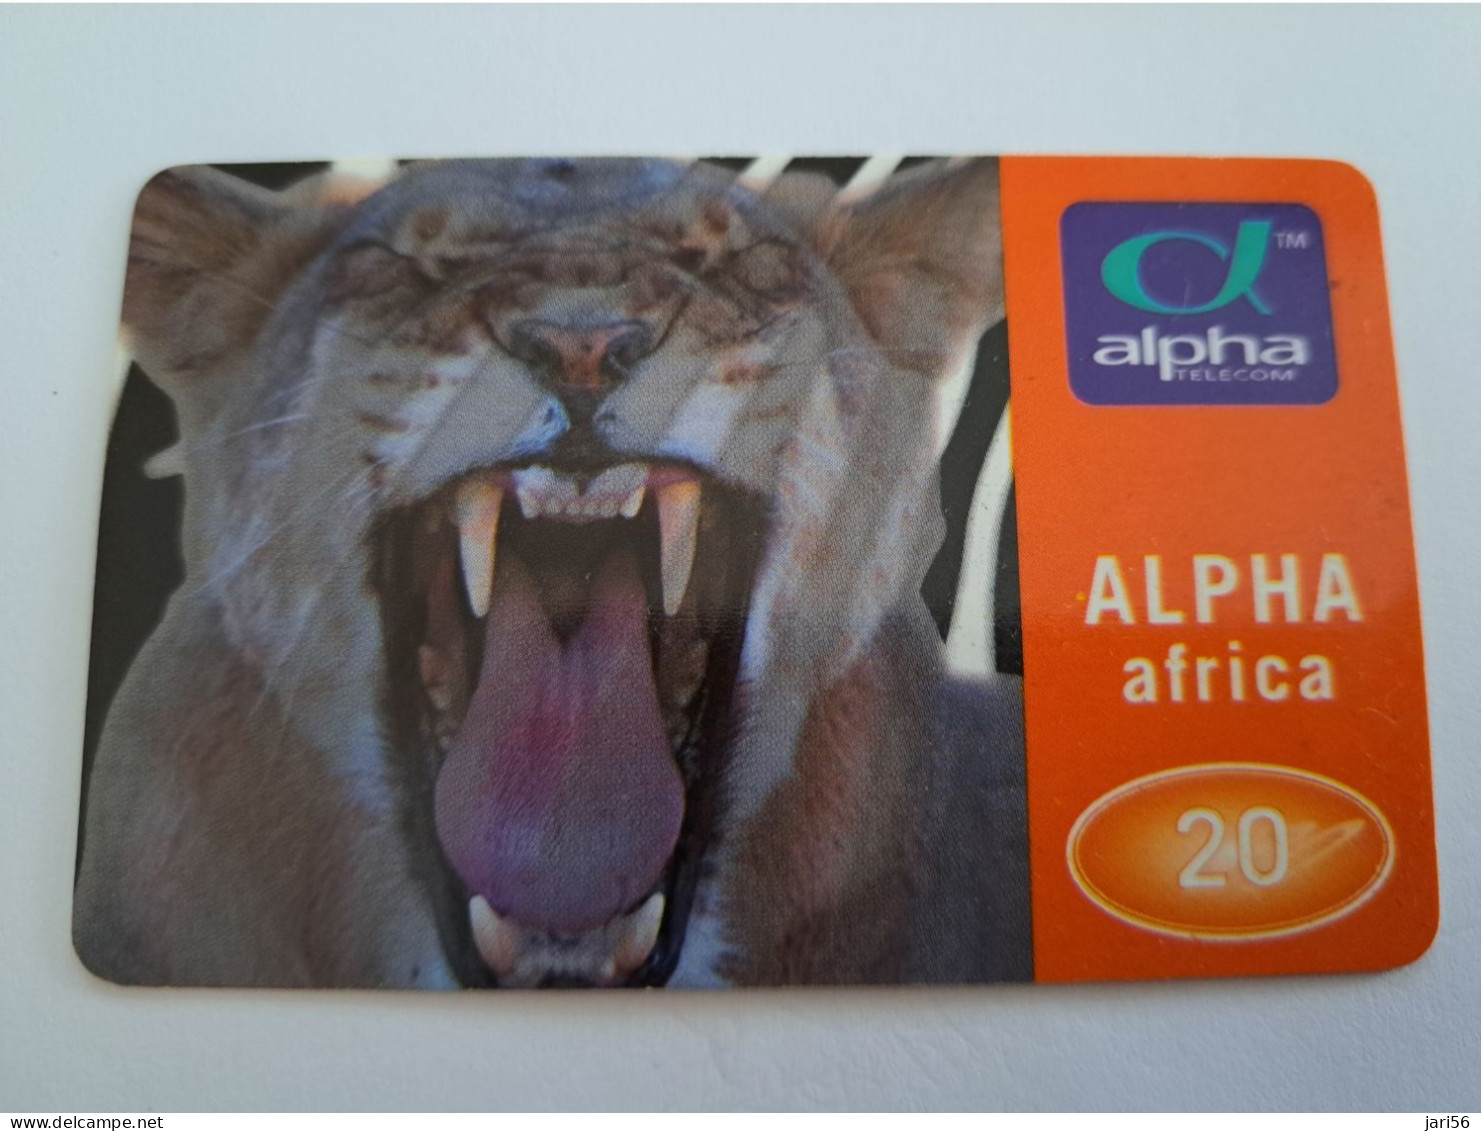 DUITSLAND/ GERMANY  / PREPAIDS CARD /  TIGER/TIGRE  / ALPHA AFRIKA         /   DM 20,-     USED     CARD **14637** - K-Series: Kundenserie